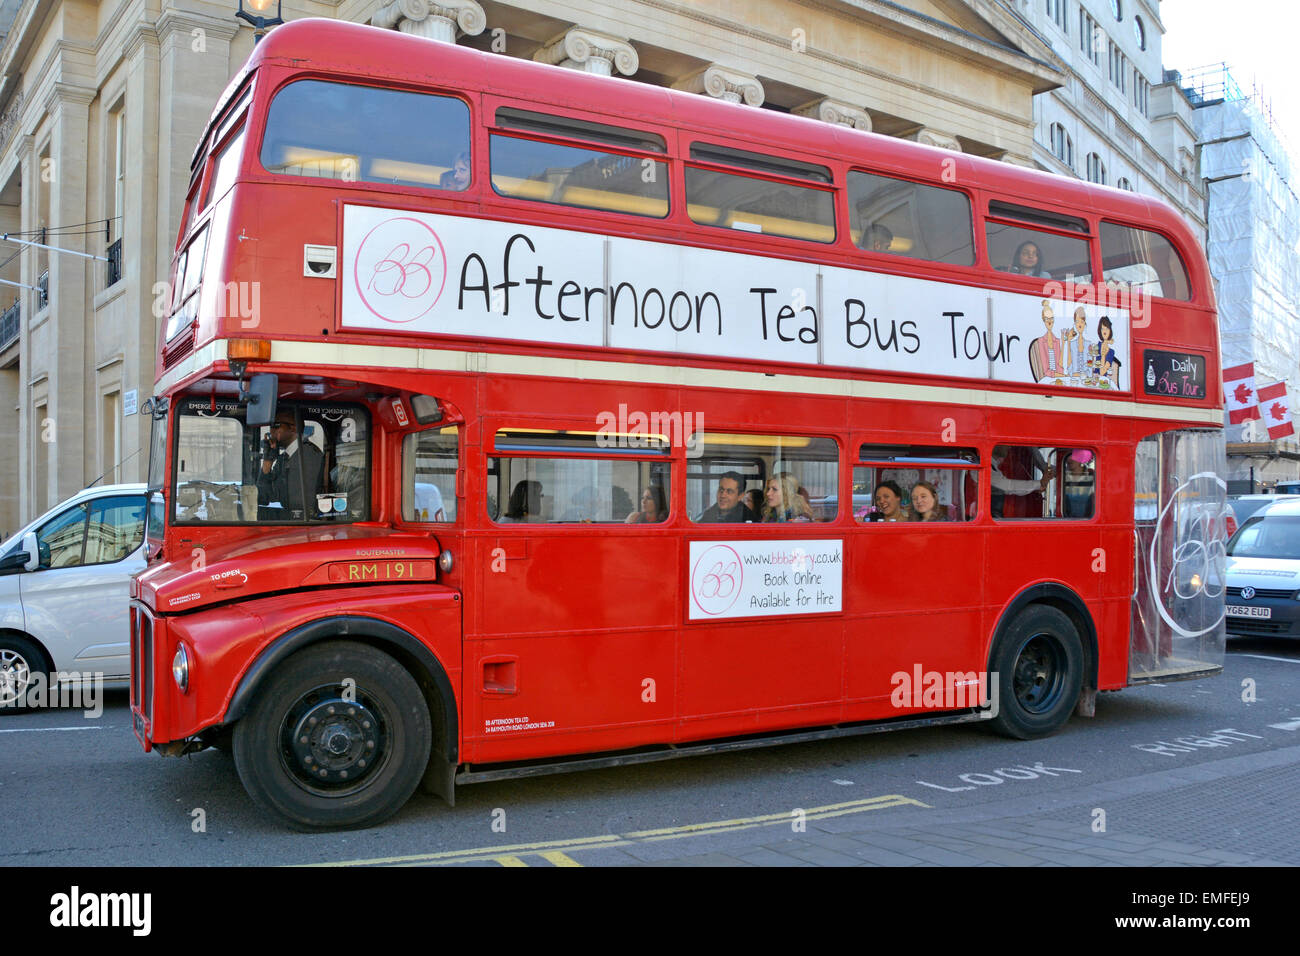 Bus à impériale à impériale rouge classique et historique routemaster, adapté pour un thé de l'après-midi et une visite de Trafalgar Square Londres Angleterre Royaume-Uni Banque D'Images